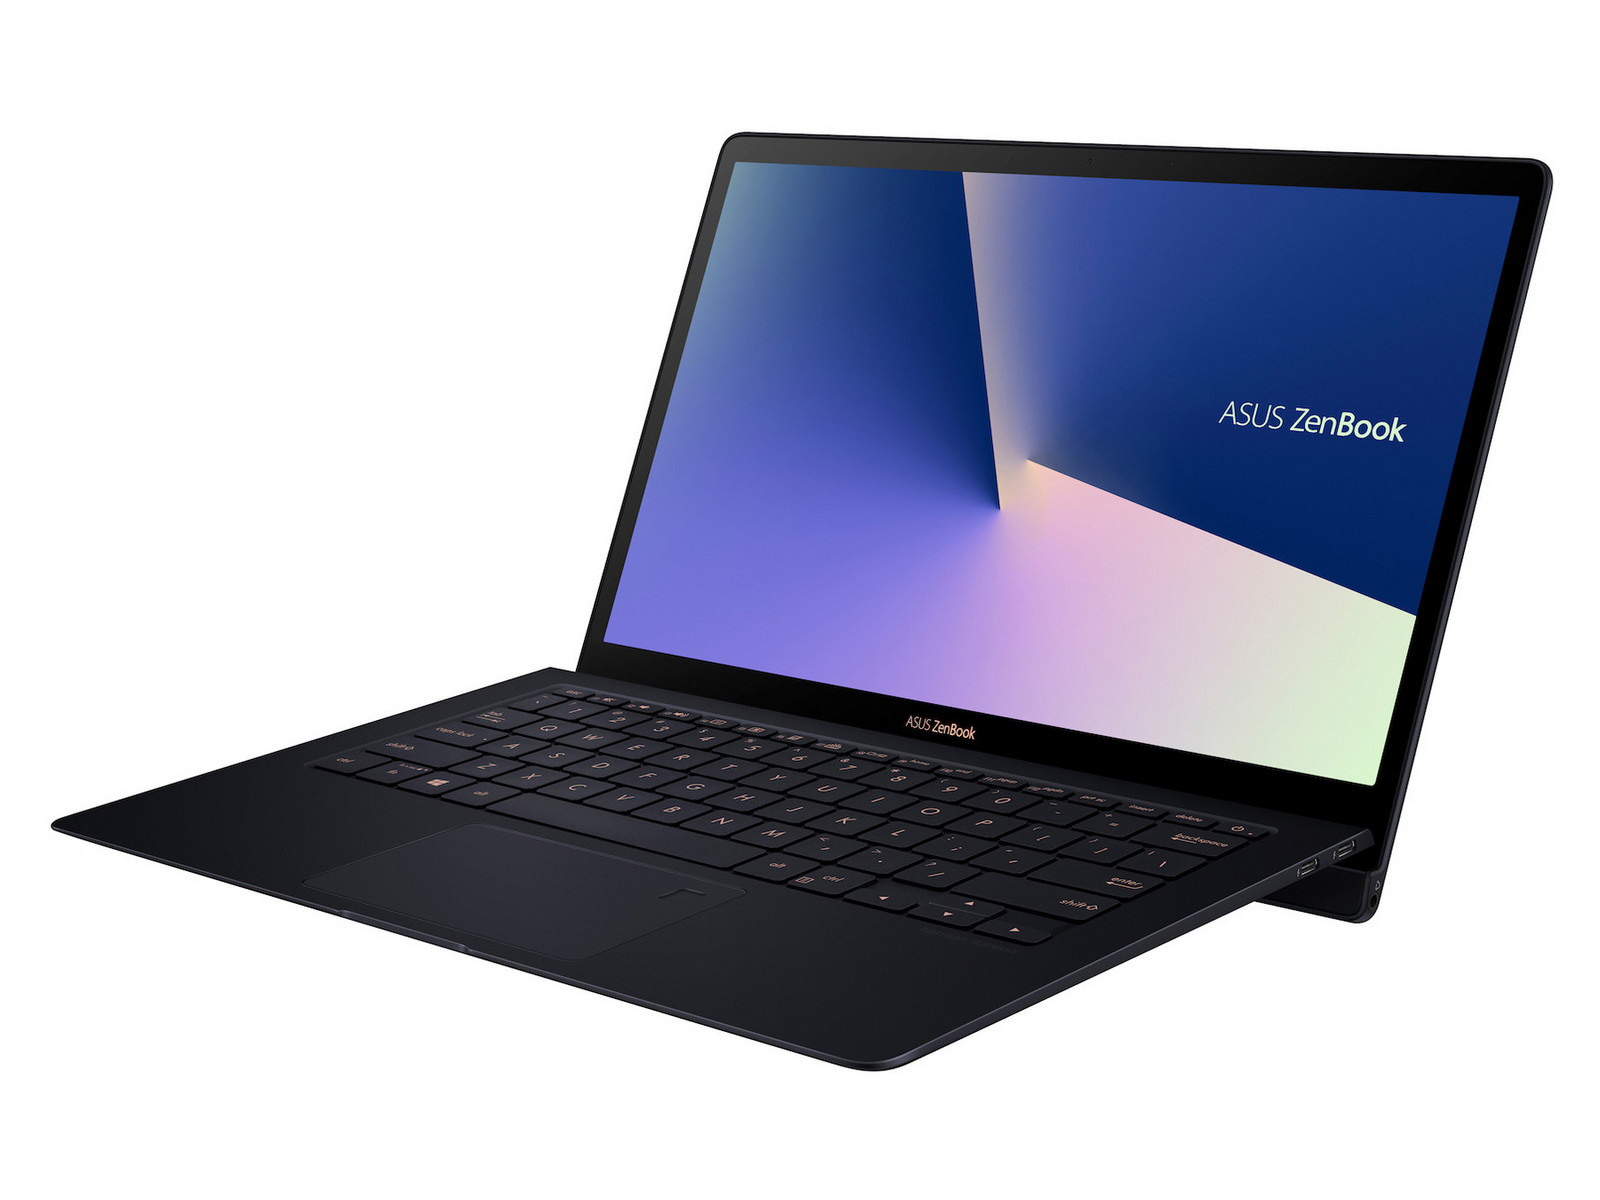 Asus ZenBook S UX391U - Notebookcheck.net External Reviews